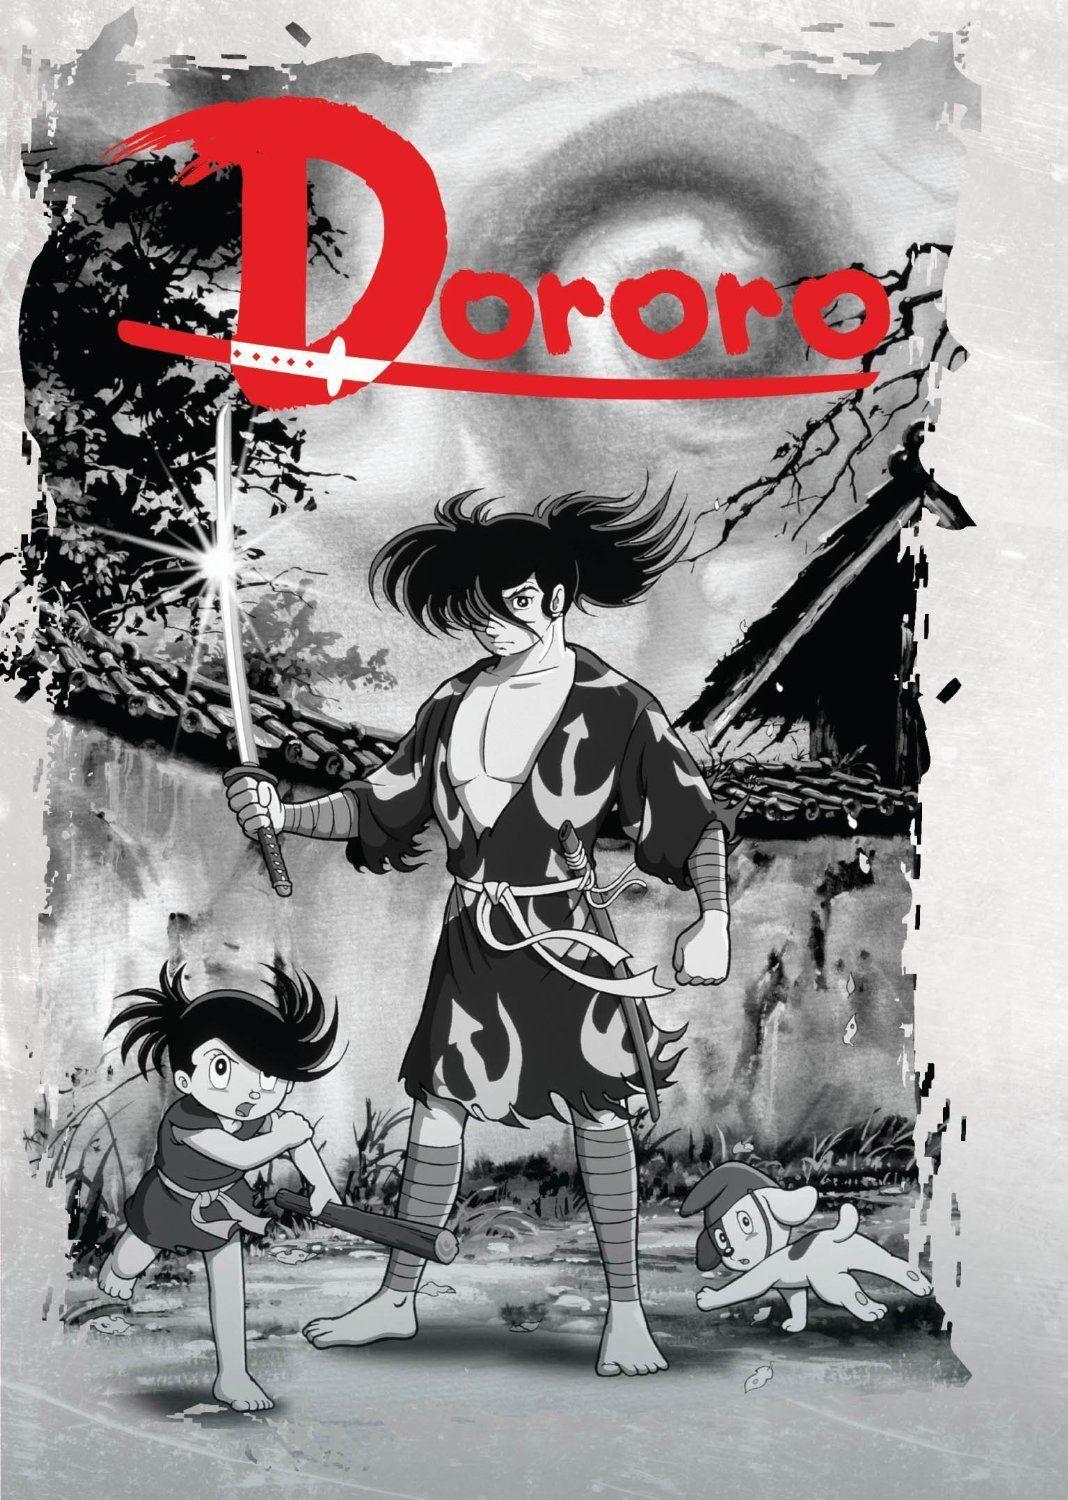 Dororo Manga Hd Wallpapers For Pc, Dororo, Anime